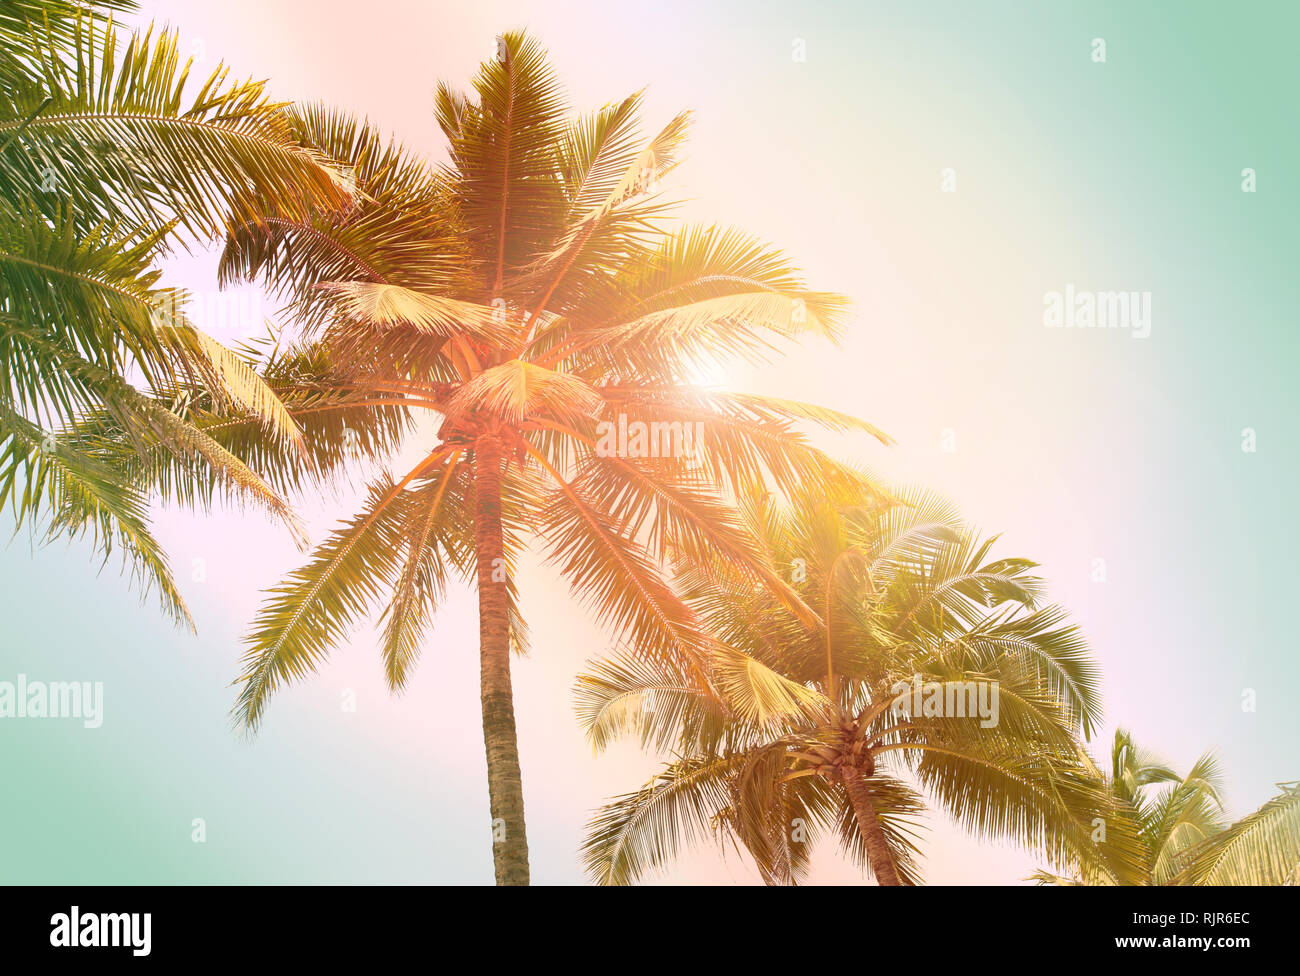 Palmiers et soleil brillant, teinté de fond tropical Banque D'Images